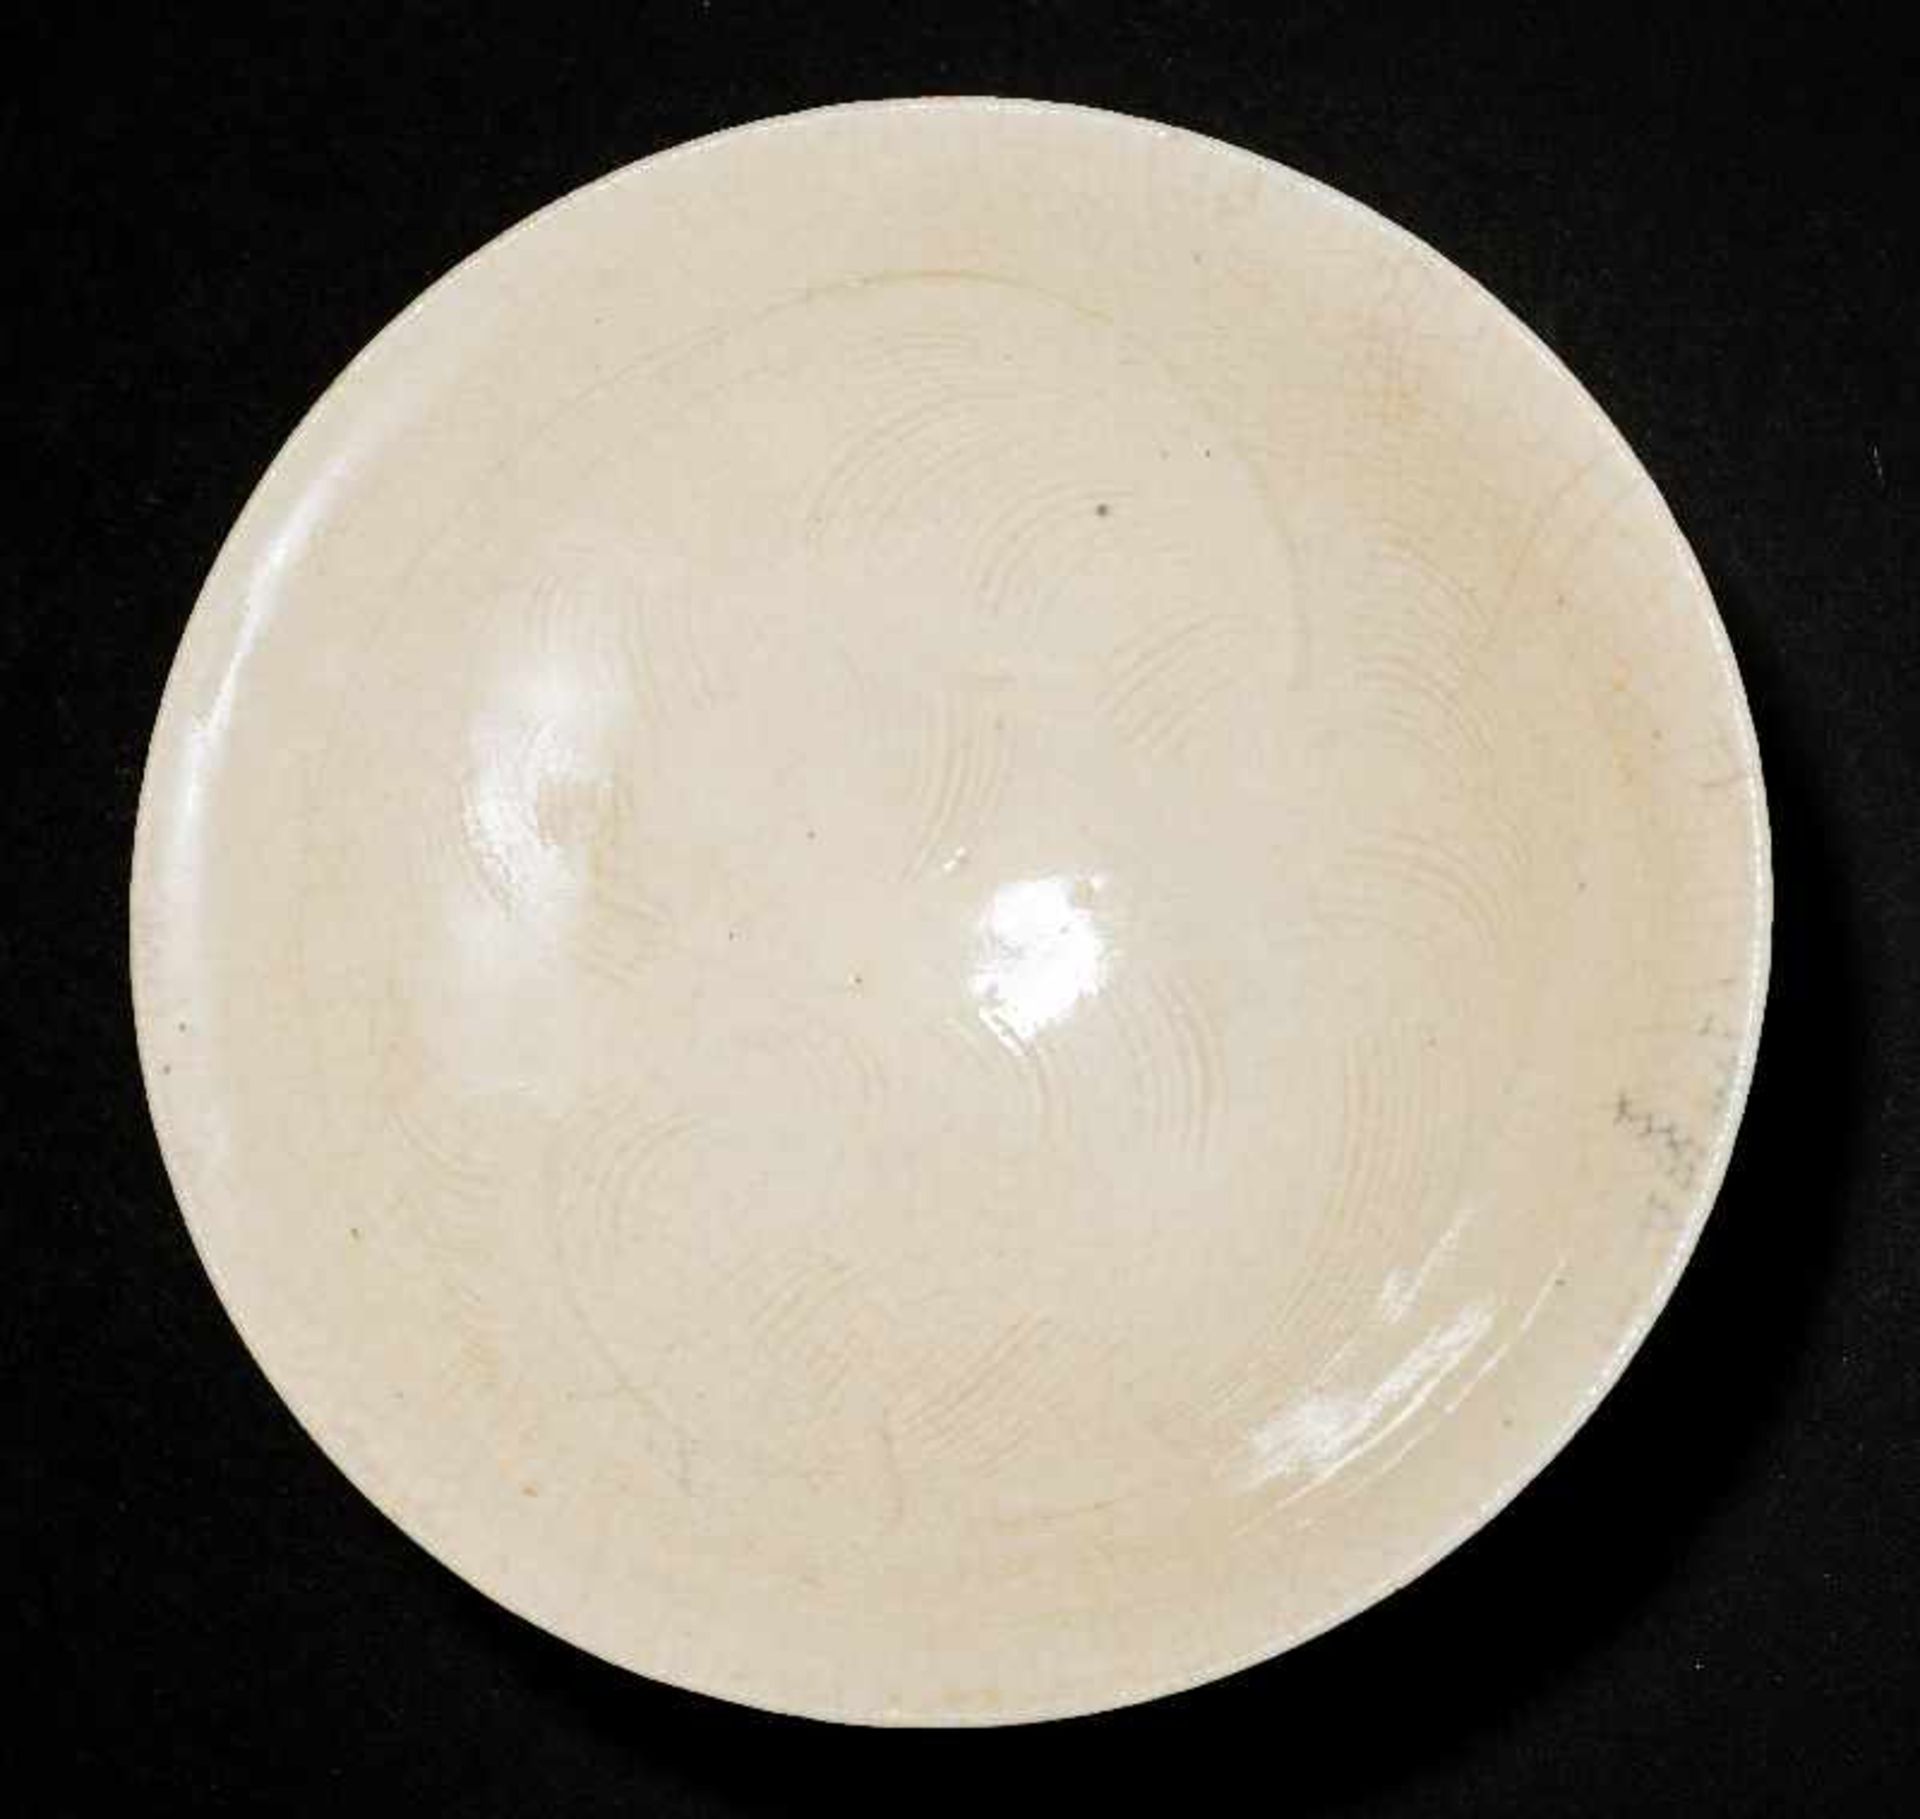 SCHALE MIT GEKÄMMTEM DEKORGlasierte Keramik. China, Nördliche Song, 11. Jh. Eine besonders feine